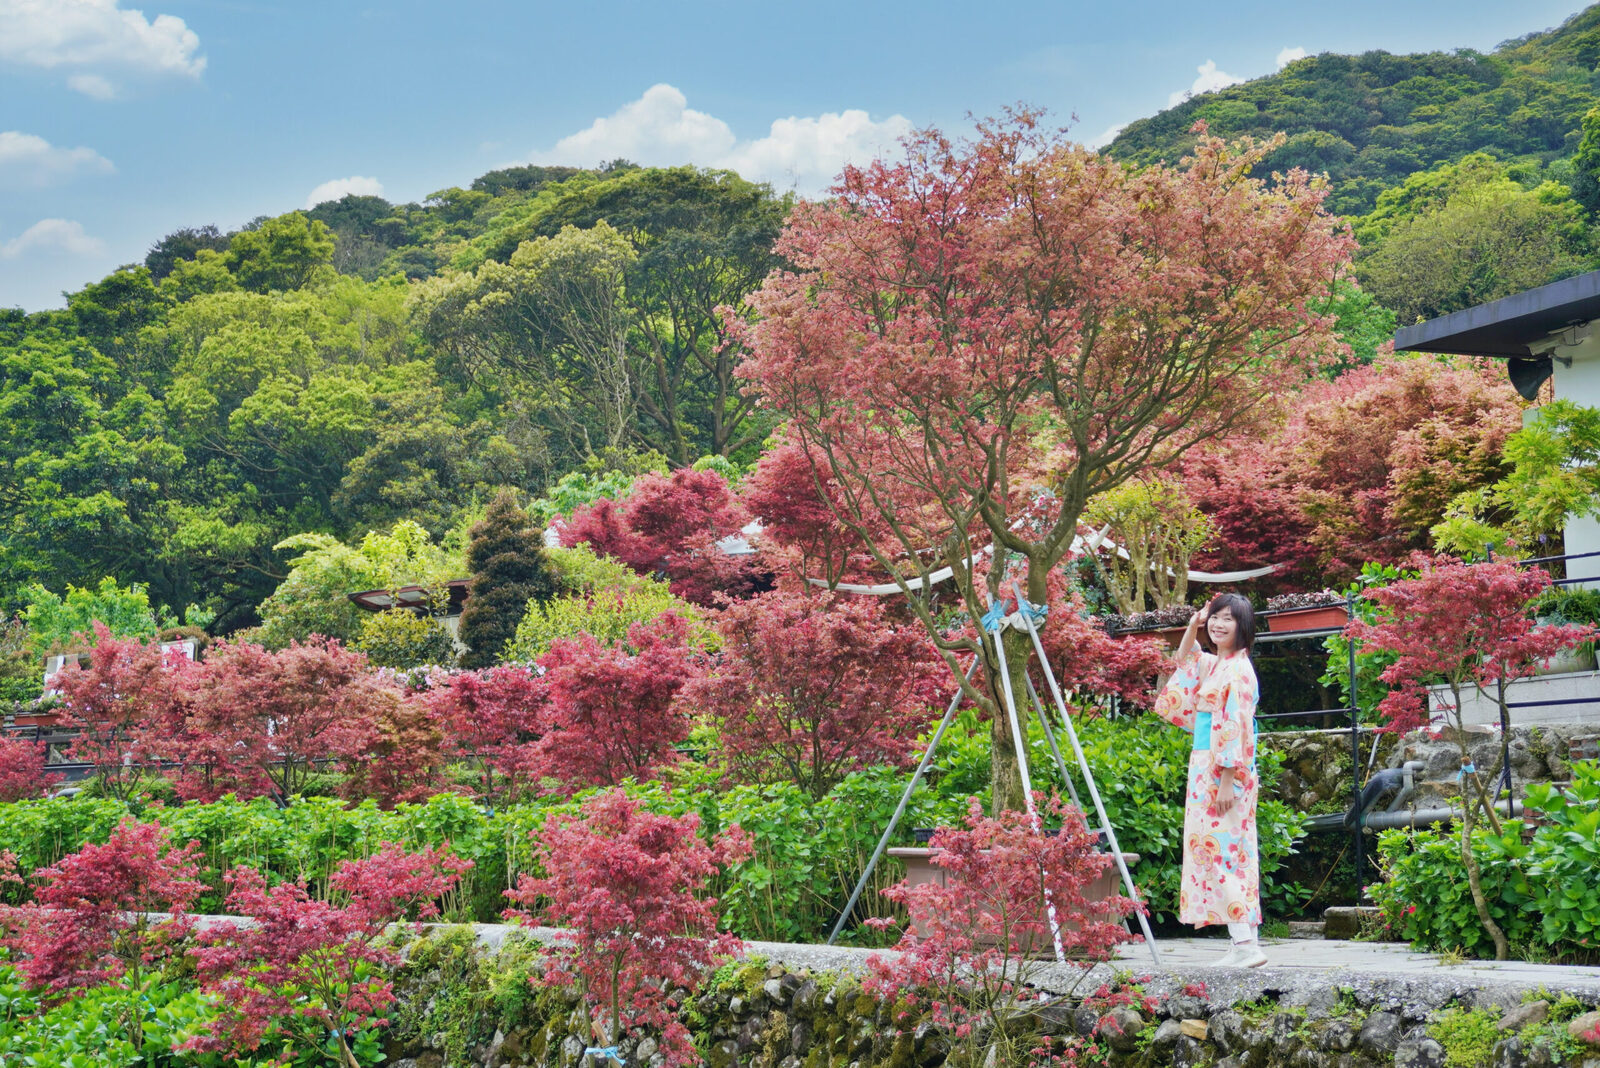 延伸閱讀：陽明山大梯田花卉生態農園｜多色楓樹漸層之美，一秒來到日本京都旅行